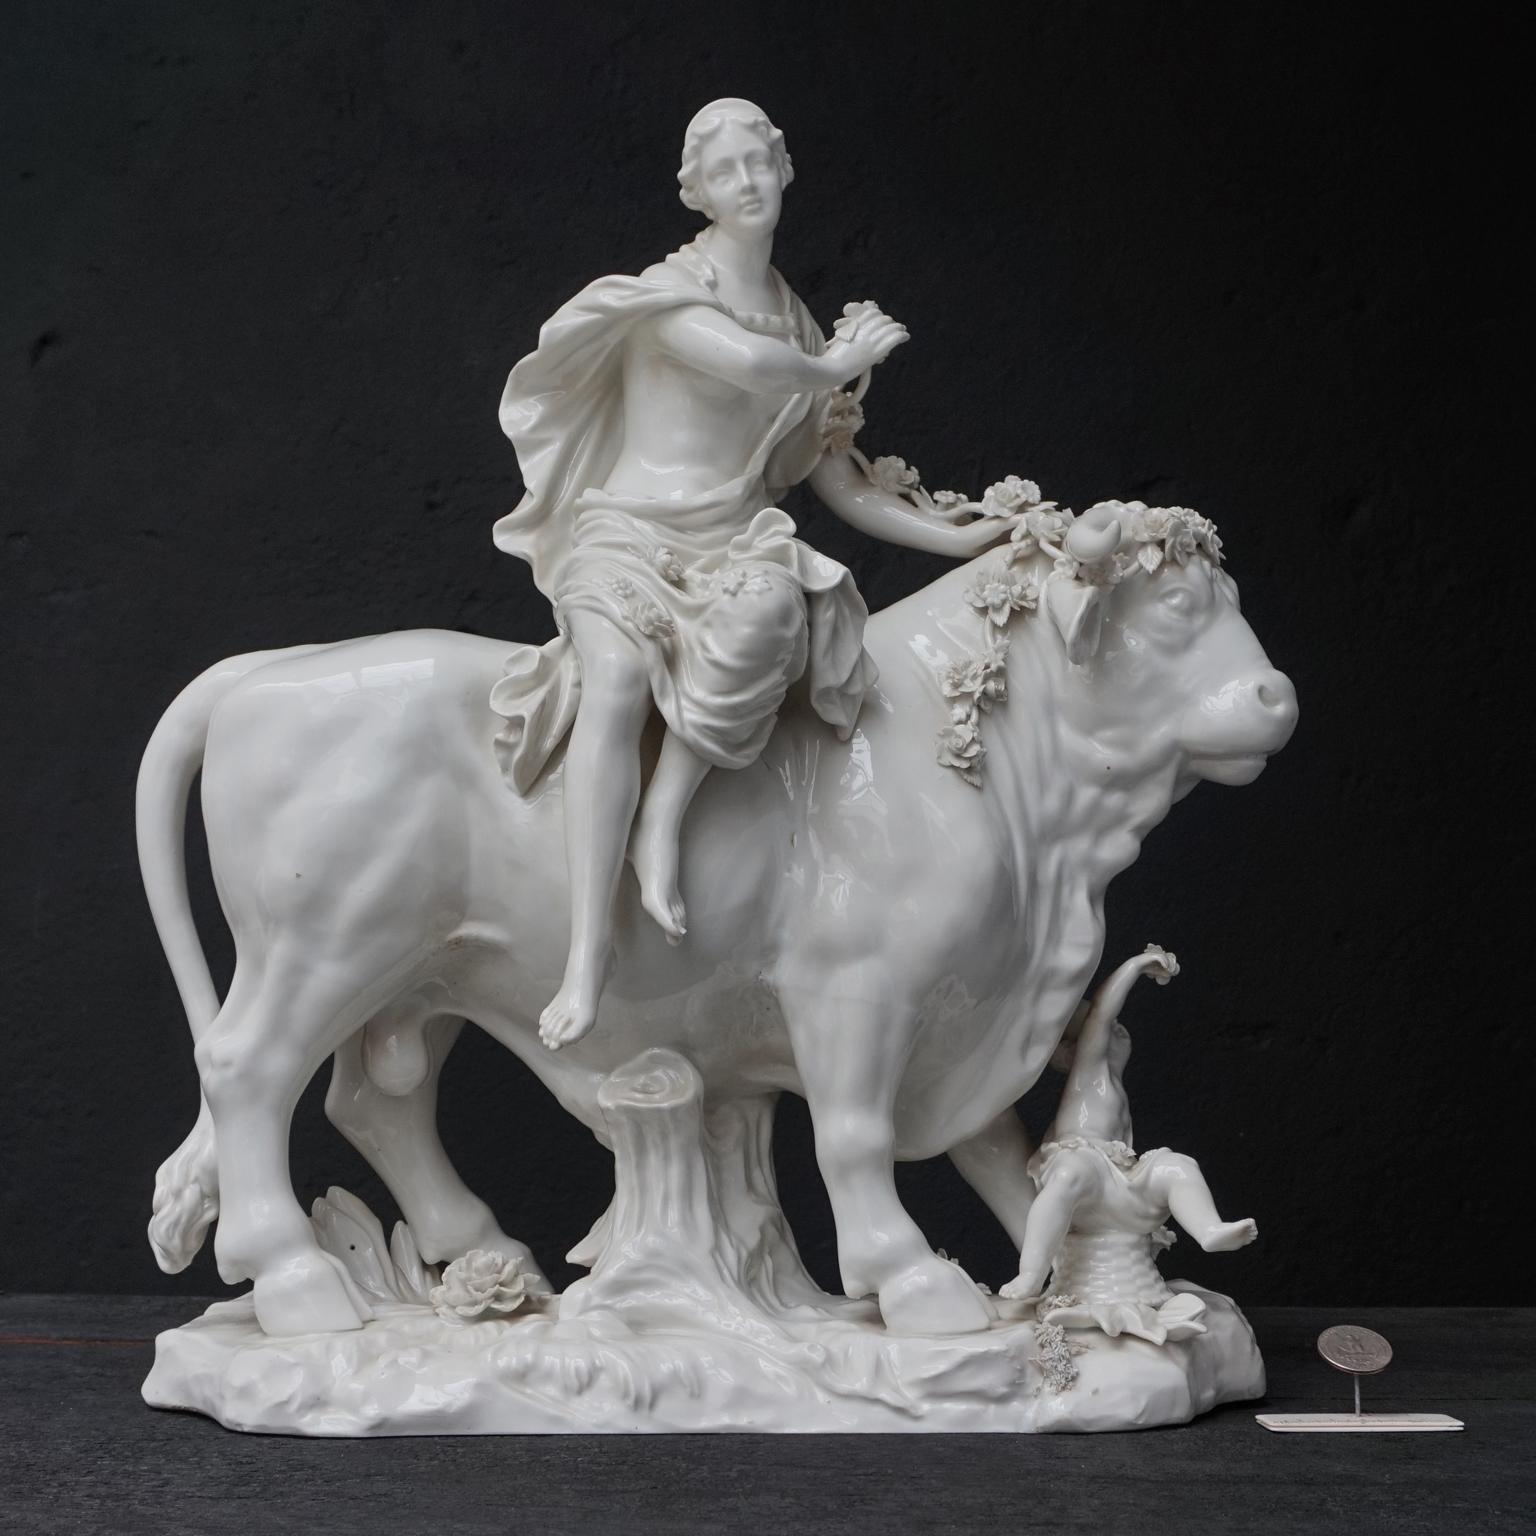 Schöne große griechische Mythologie weißes Porzellan Figurengruppe mit Europa und Zeus. 
Ich habe noch nie ein so großes Modell gesehen und finde es beeindruckend in Größe, Details und Farbe. 

Auf der Innenseite des Sockels befindet sich ein